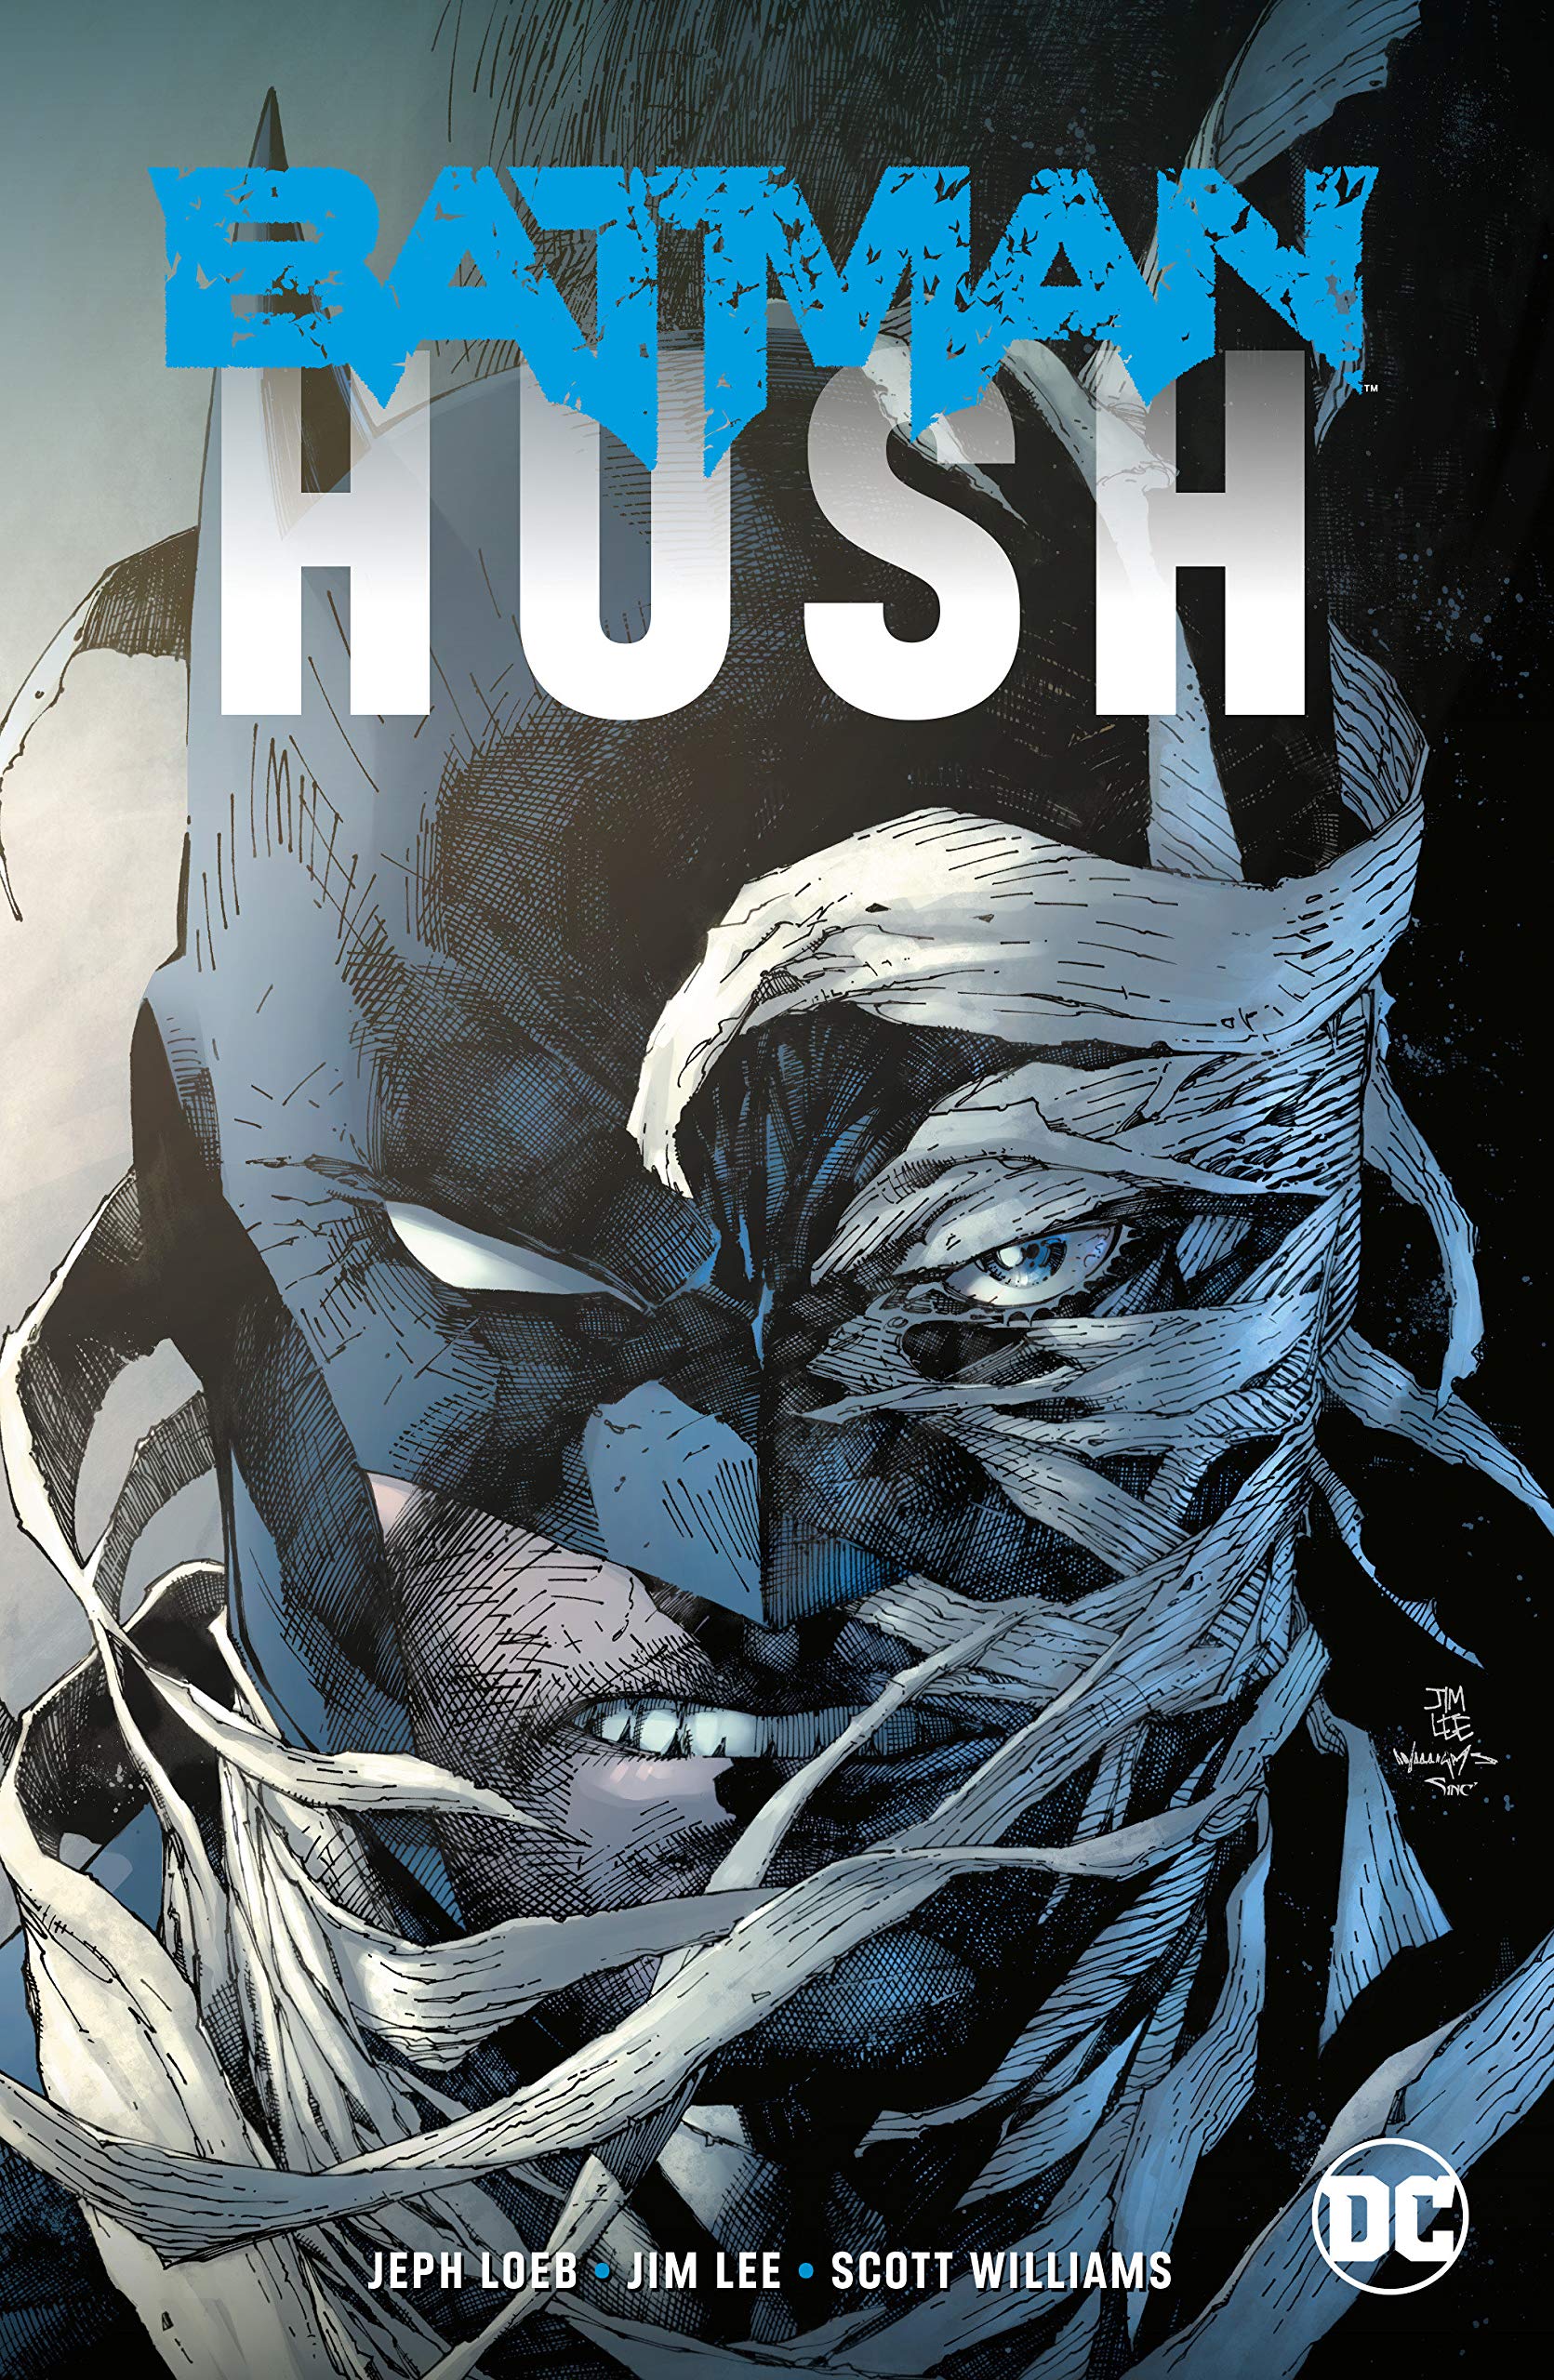 Mua Batman: Hush (New Edition) trên Amazon Mỹ chính hãng 2023 | Fado